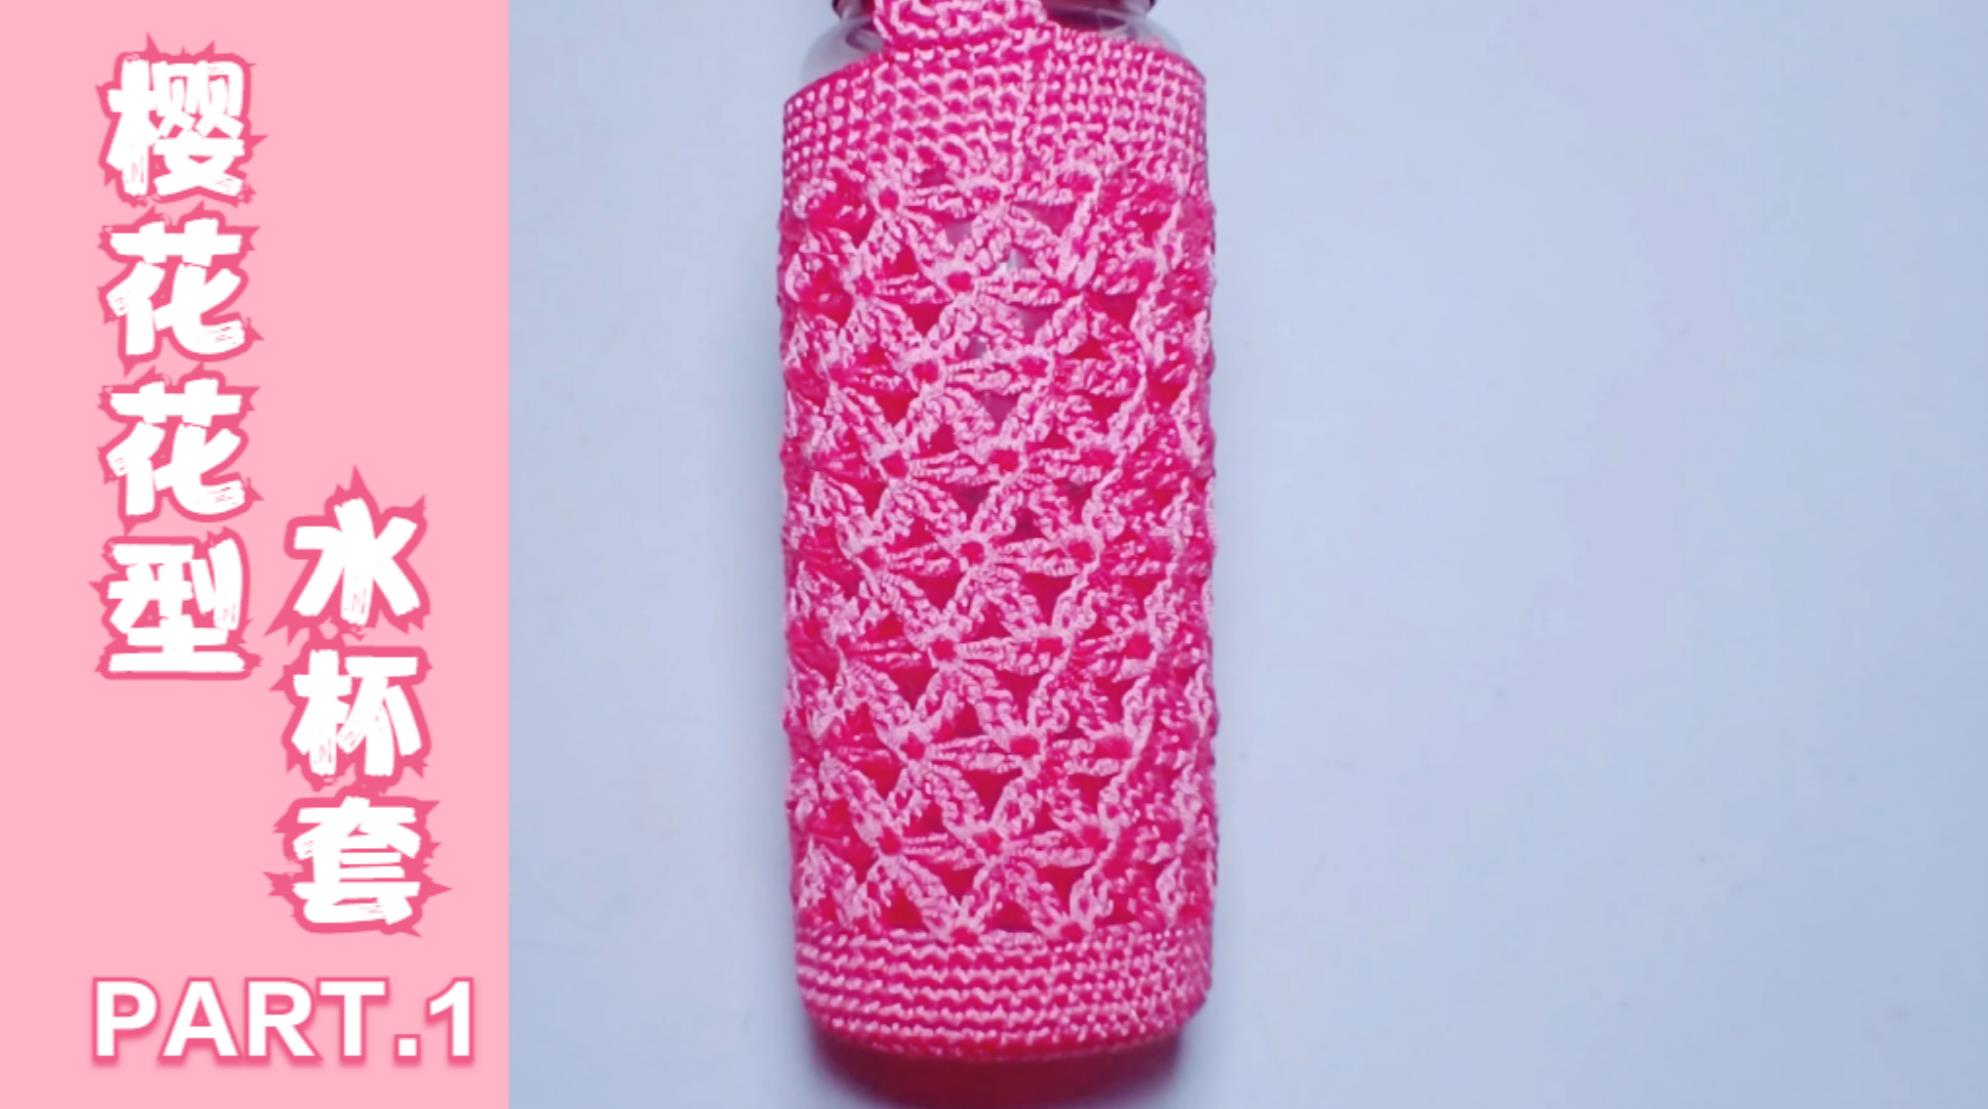 教你钩织一款樱花花型水杯套,简约漂亮实用耐磨,出门带水很方便